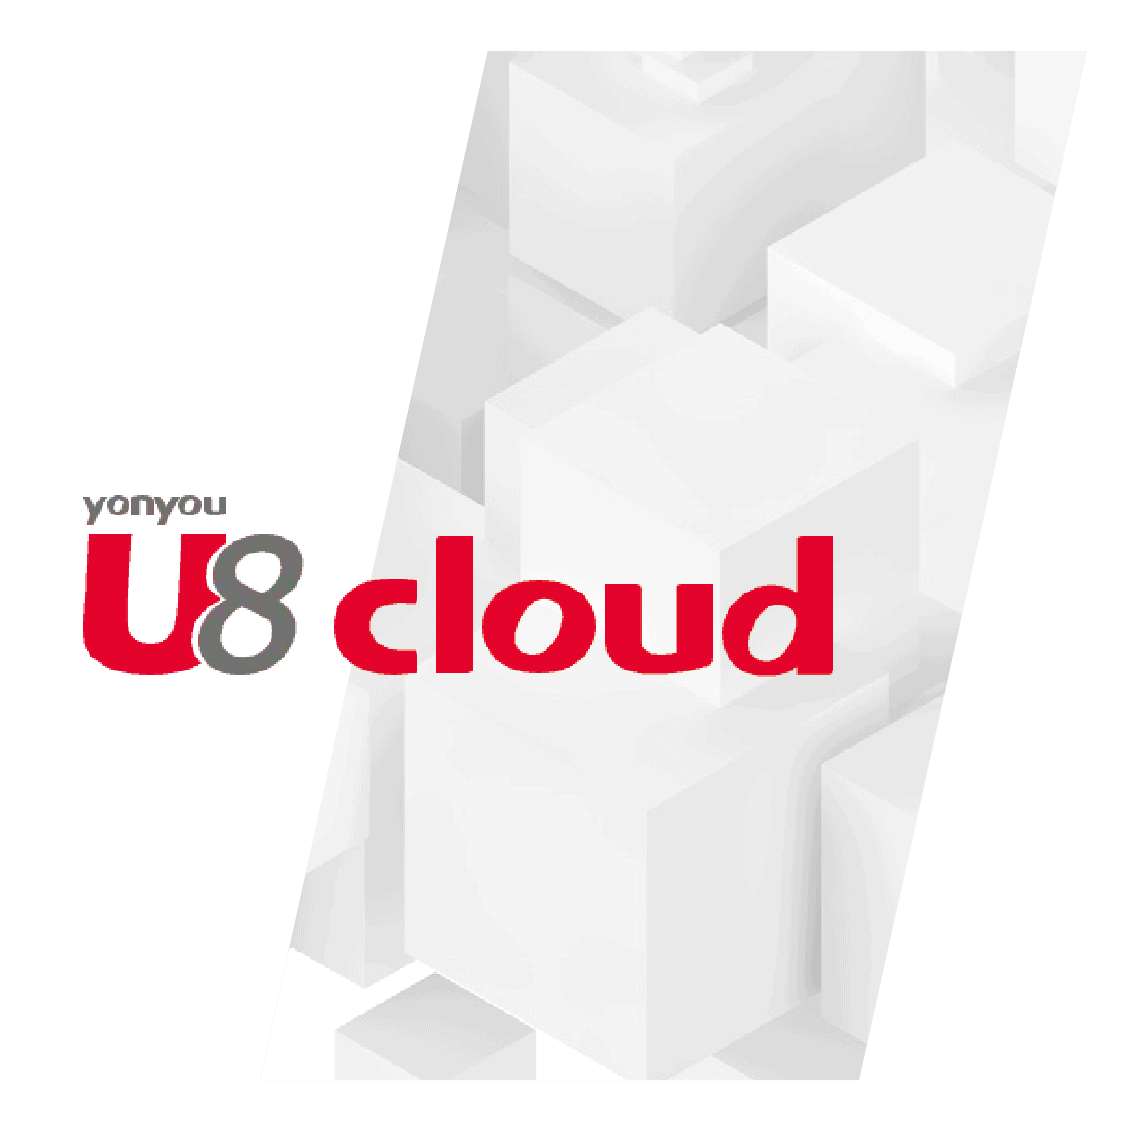 yonyou-u8-cloud-graphic